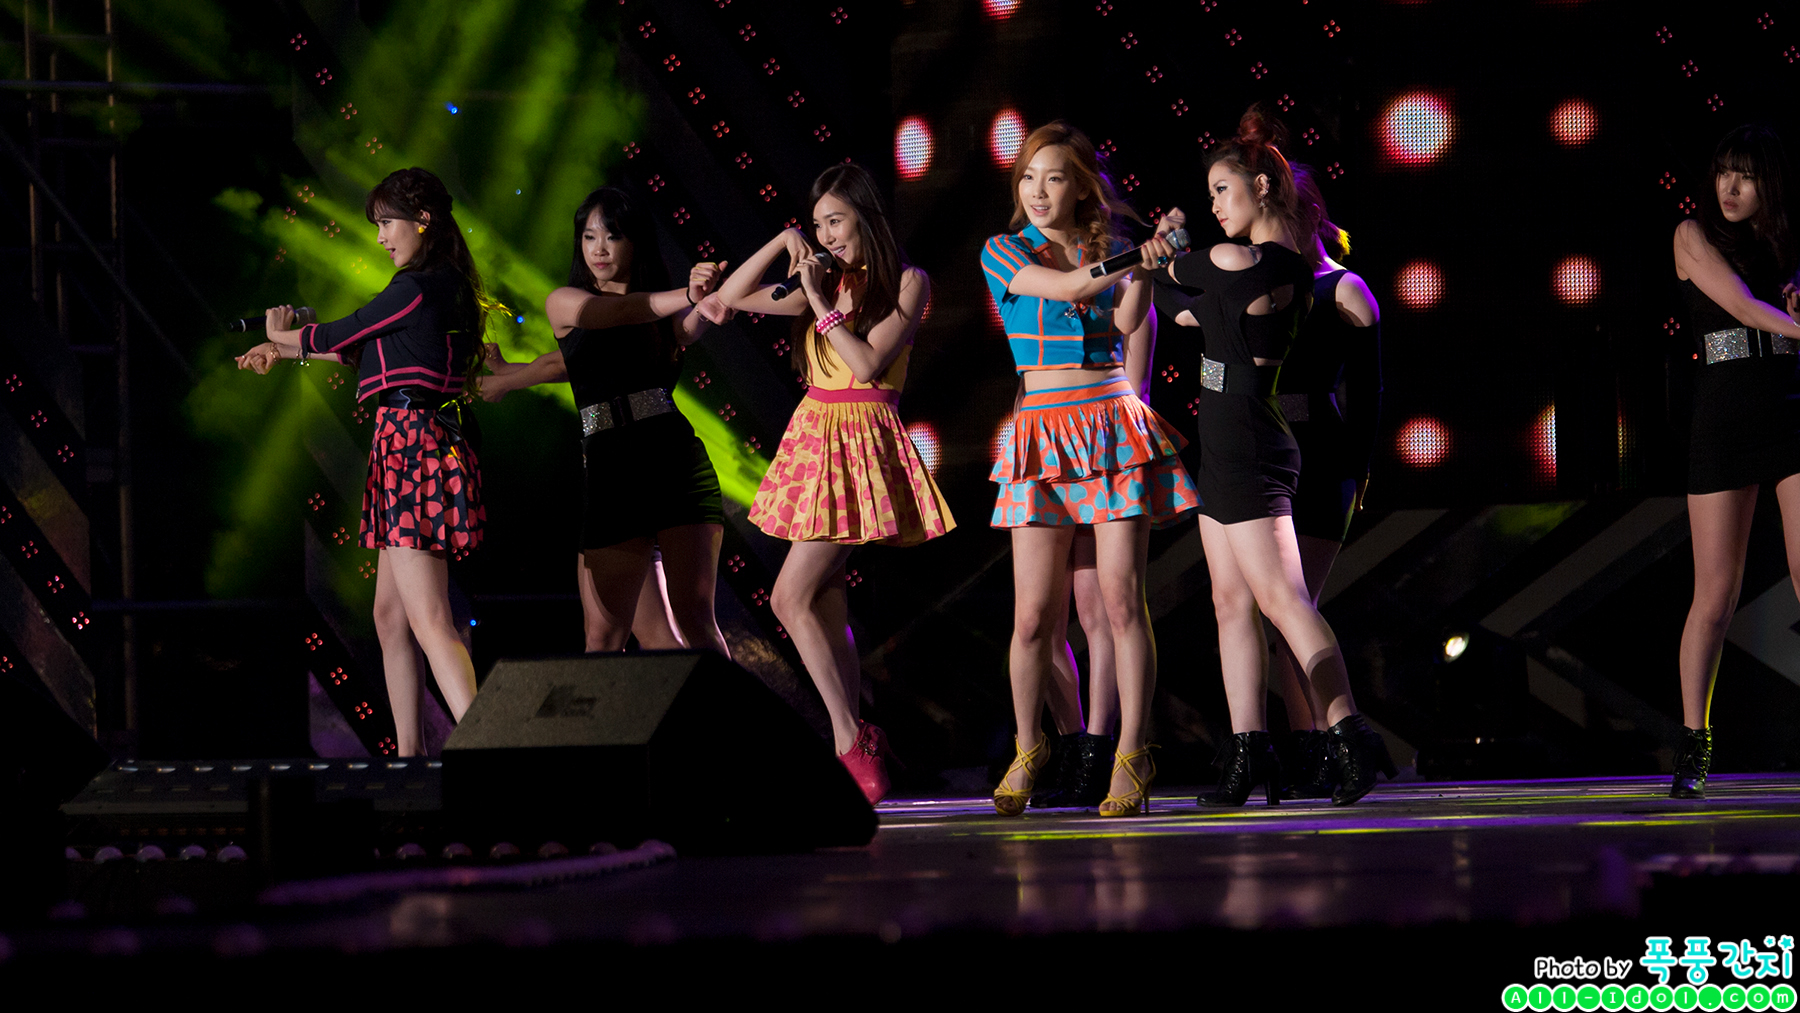 [PIC][30-05-2013]TaeTiSeo biểu diễn tại "PyeongTaek Concert" vào tối nay - Page 2 015A7A5051A8AC3E2B527C